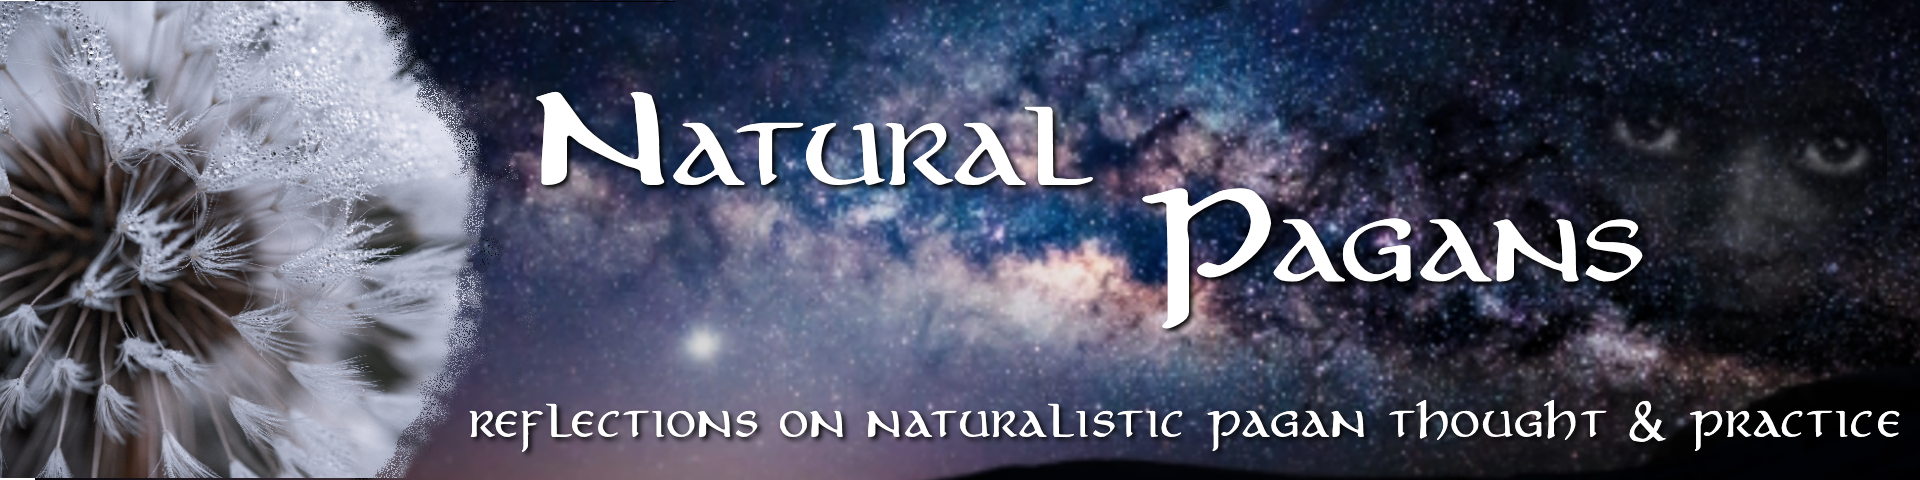 NaturalPagans